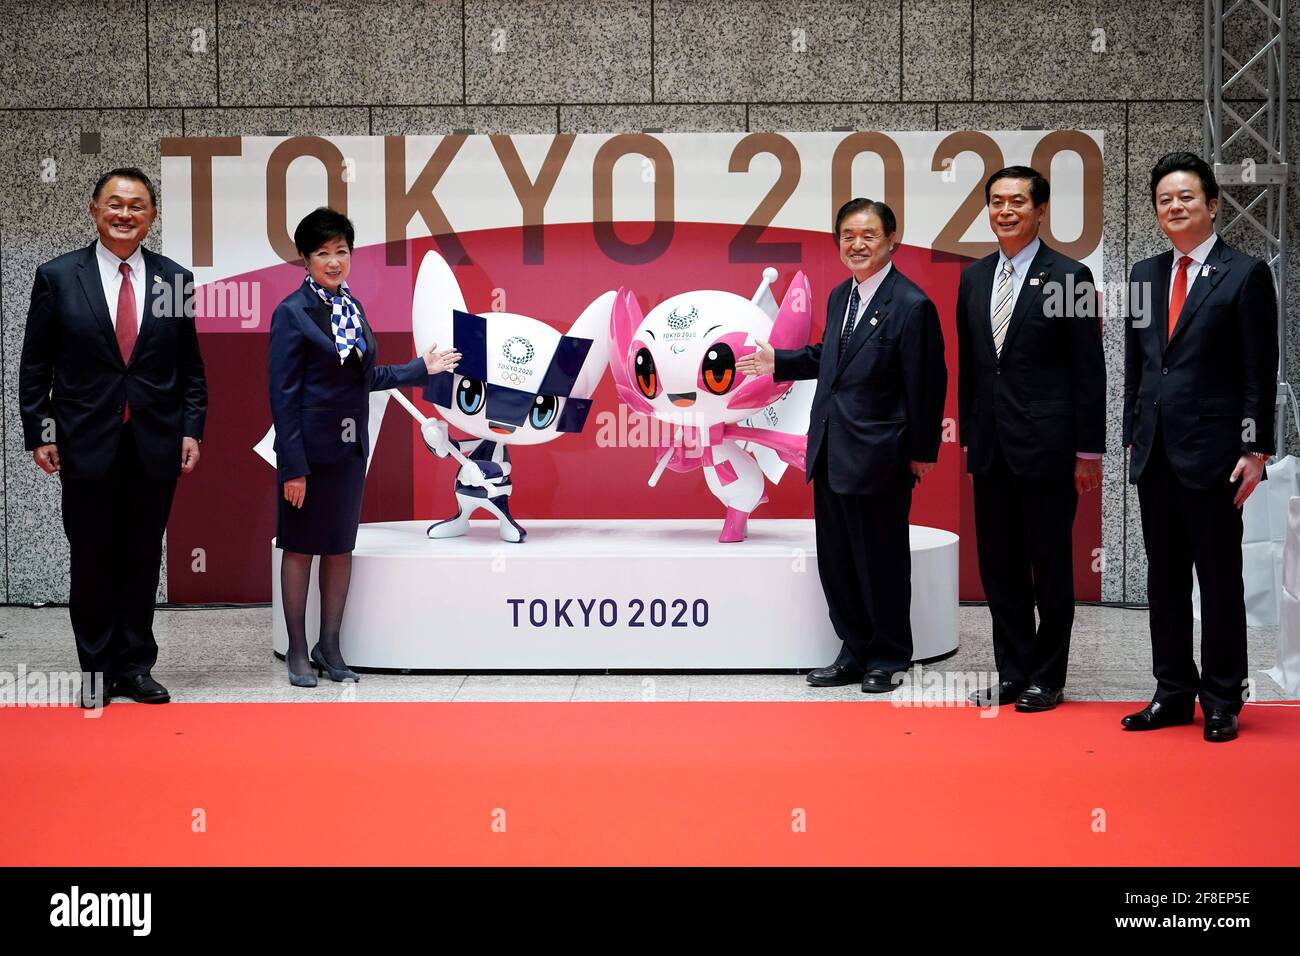 14 avril 2021, Tokyo, JPN : de gauche à droite, Yasuhiro Yamashita, président du Comité olympique japonais, Tokyo Gov. Yuriko Koike, Tokyo 2020 Vice-président du comité organisateur Toshiaki Endo, Ryoichi Ishikawa, Président de l'Assemblée métropolitaine de Tokyo, et Kunihiko Koyama, Président du comité spécial sur les mesures à prendre pour promouvoir les Jeux olympiques et paralympiques de l'Assemblée métropolitaine de Tokyo posent avec les statues dévoilées de Miraitowa, à gauche, Et Someity, à droite, les officiels mascottes pour les Jeux Olympiques et Paralympiques de Tokyo 2020, à marquer 100 jours avant le début des Jeux Olympiques Tokyo 2020 à la Metropoli de Tokyo Banque D'Images